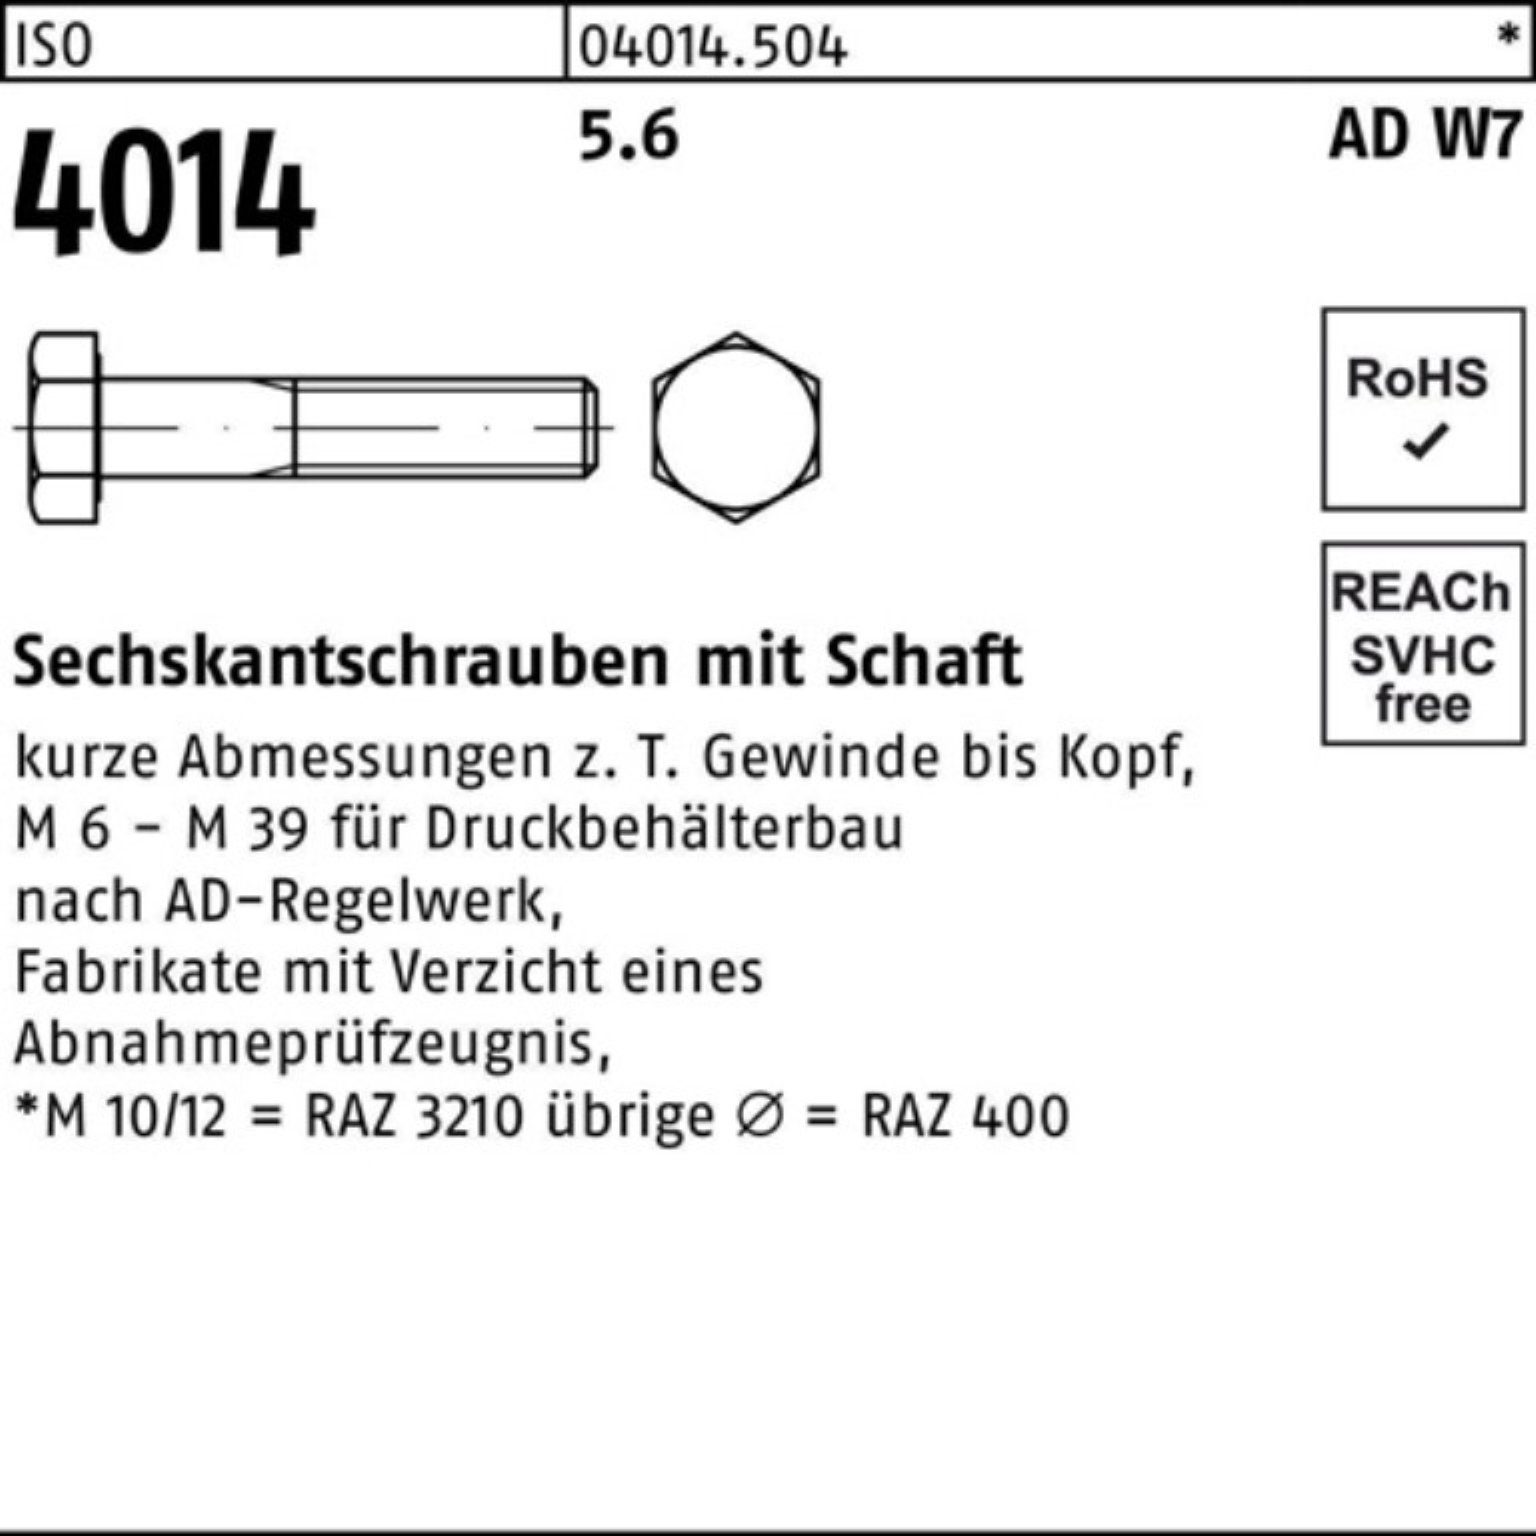 5.6 Bufab Stück Sechskantschraube 100er Schaft 4014 ISO M22x 10 W7 Pack Sechskantschraube 100